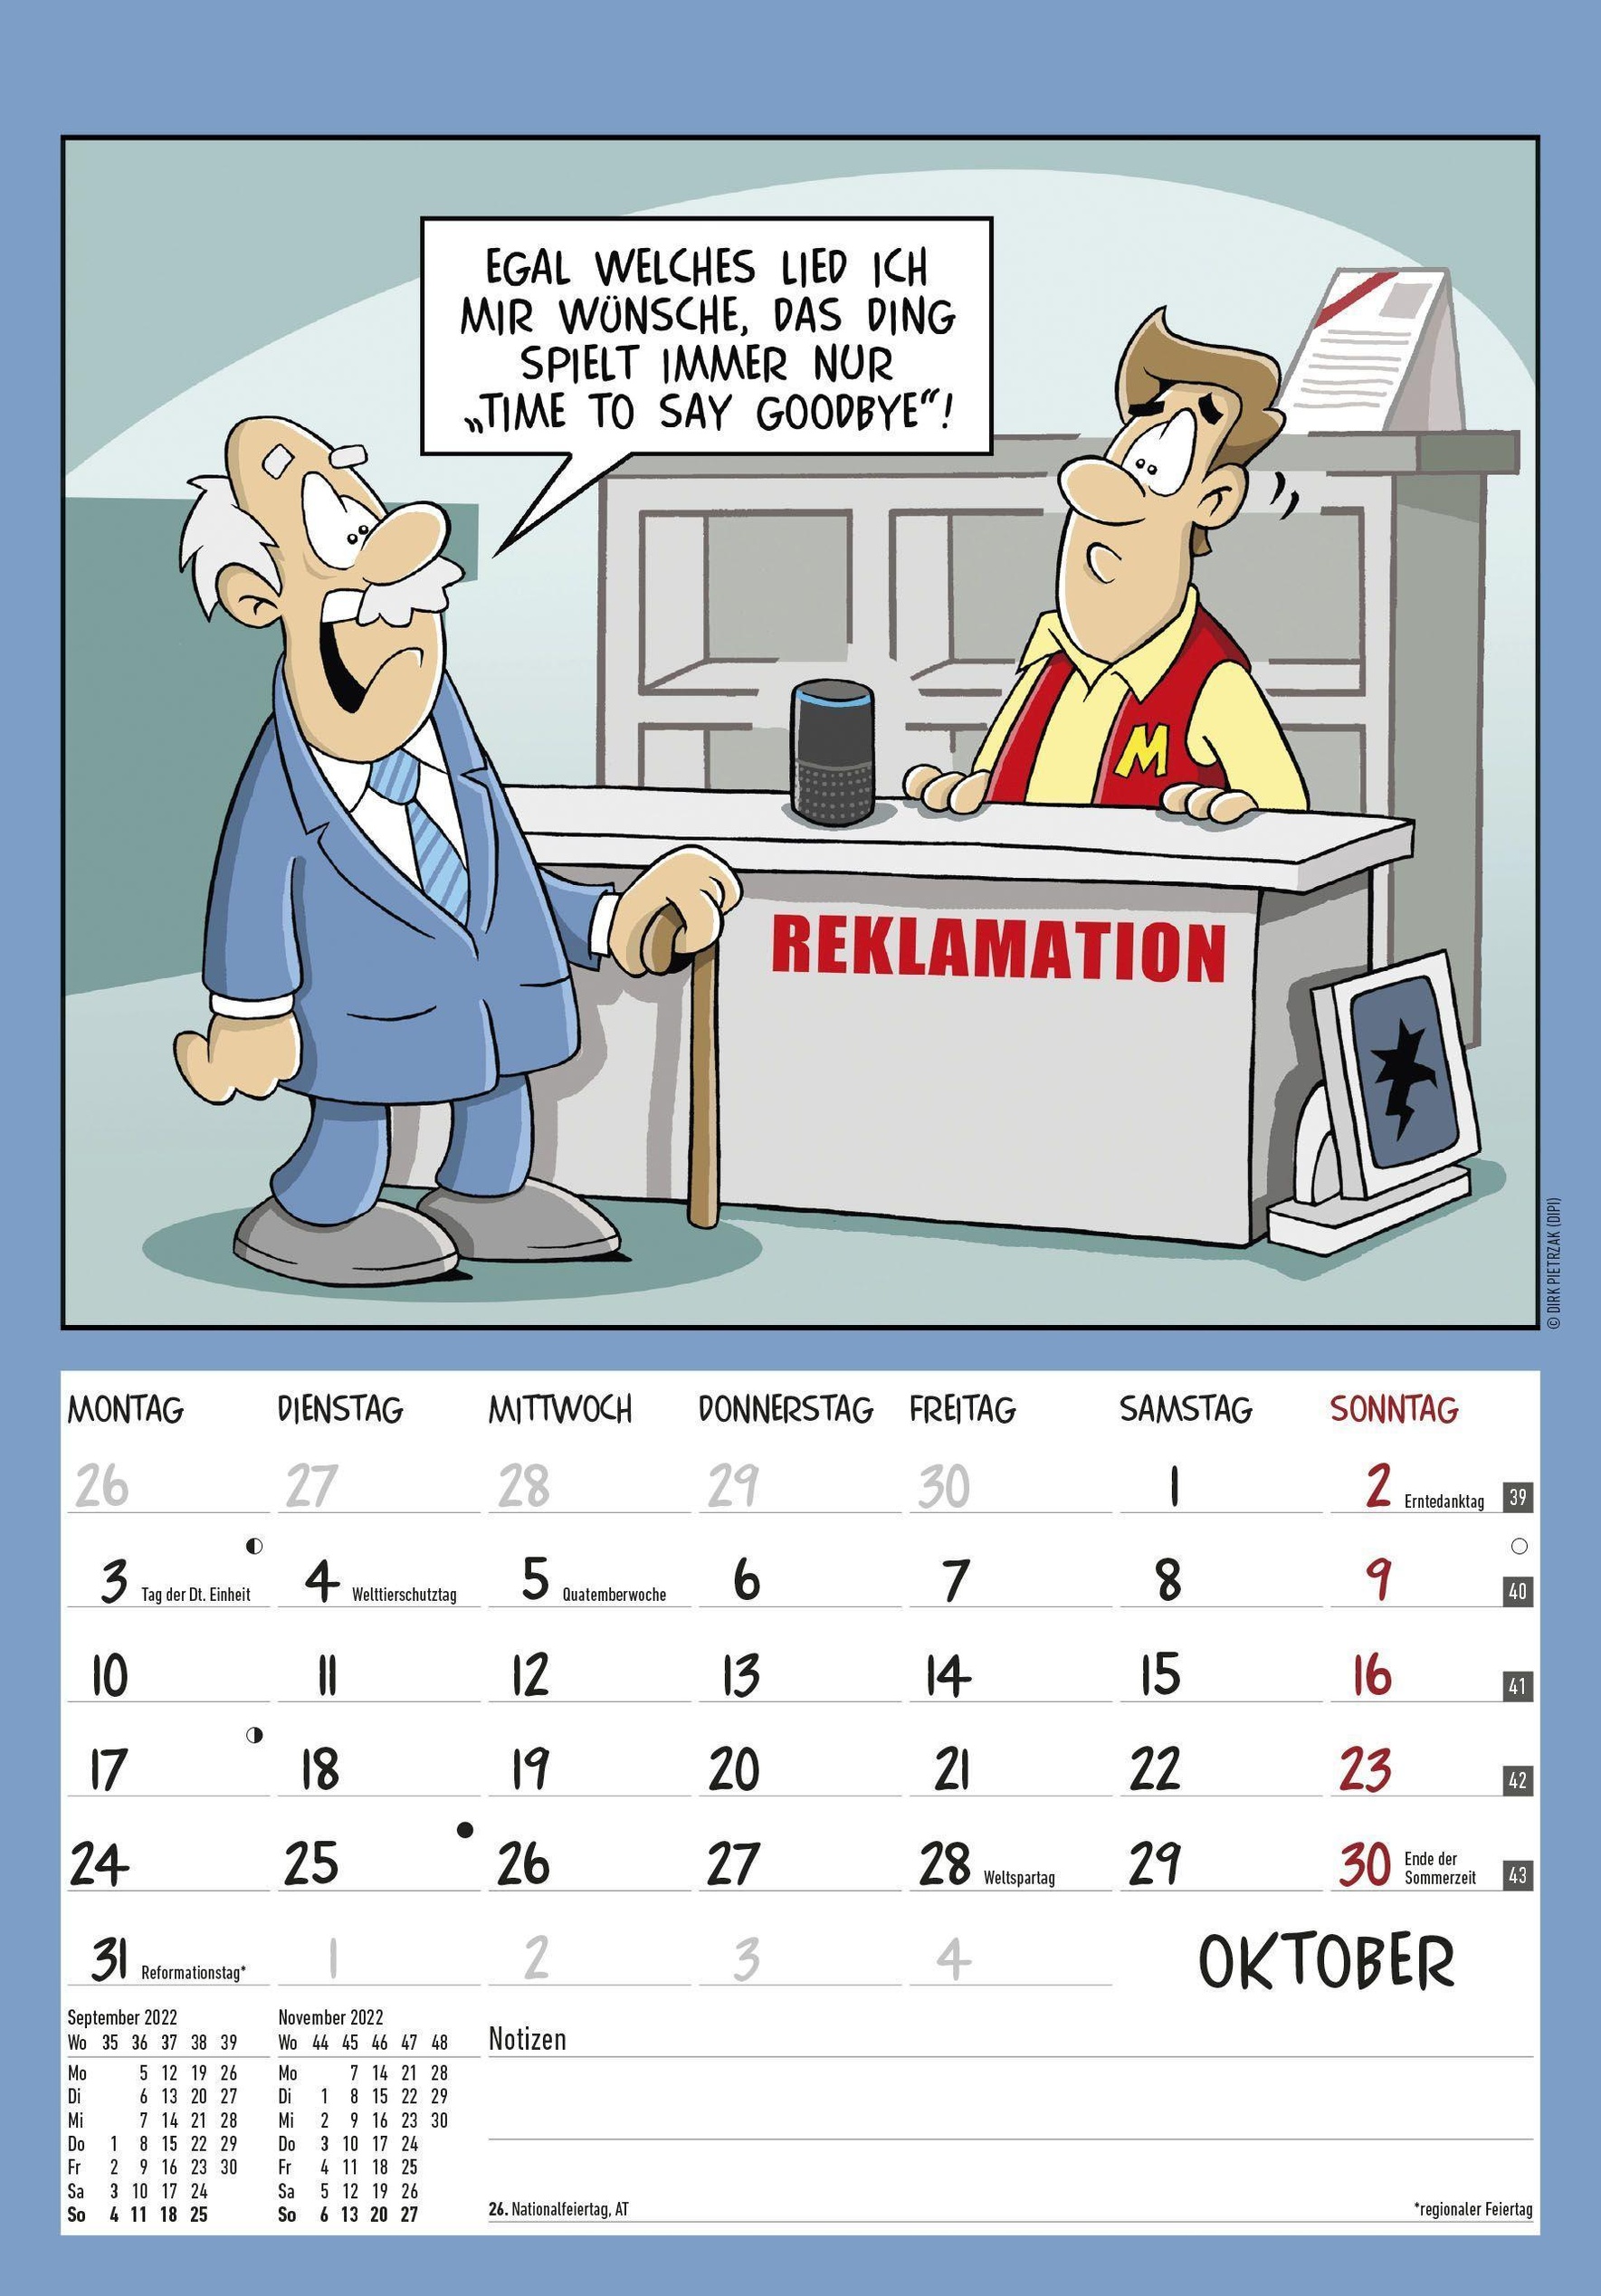 Der Rentner Kalender 12   Bild Kalender 12,12x12 cm   mit lustigen  Cartoons   Humor Kalender   Comic   Wandkalender   m